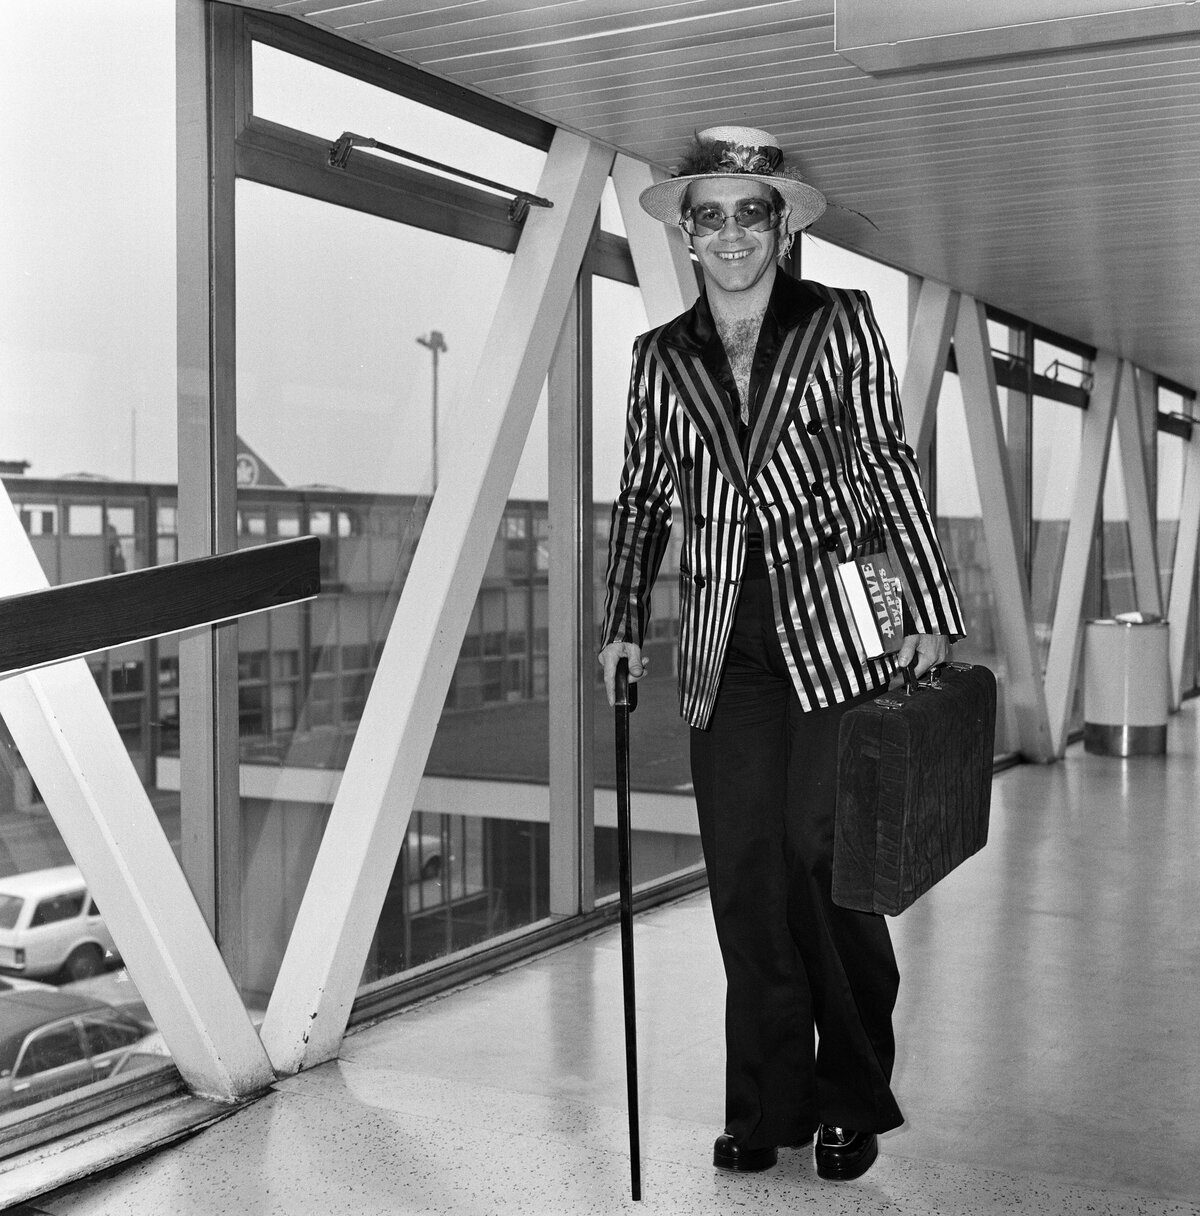 A popsztár Elton John virágokkal és tollakkal díszített kalapban érkezik a Heathrow repülőtérre Los Angelesből, ahol új albumát vette fel. Háromhetes tartózkodásra tért vissza, és prioritási listájának élén a holnapi Huddersfieldben megrendezésre kerülő labdarúgó-mérkőzés áll, ahol Elton kedvenc csapatának, a Watfordnak fog szurkolni, 1974. augusztus 30. (Fotó: Dennis Stone/Mirrorpix/Getty Images)